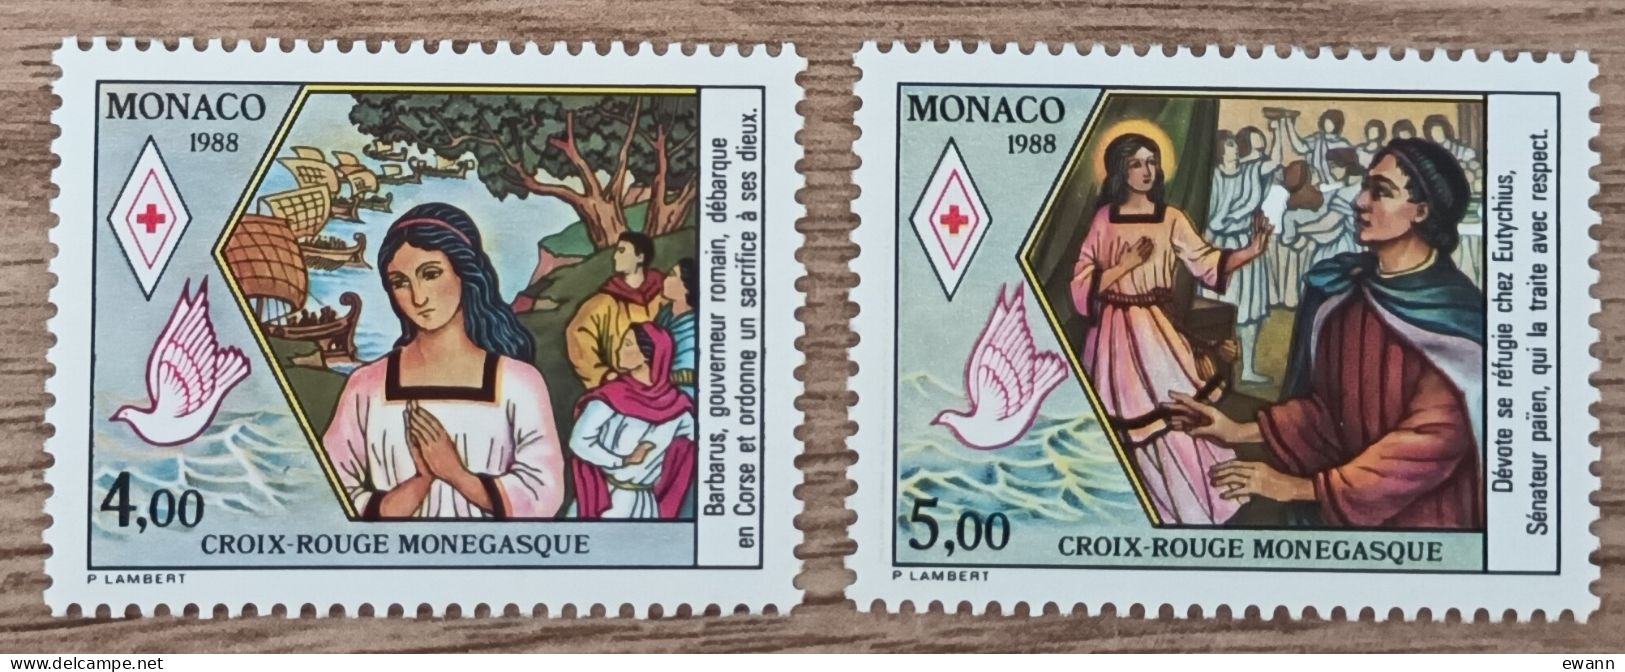 Monaco - YT N°1649, 1650 - Croix Rouge Monégasque - 1988 - Neuf - Ongebruikt